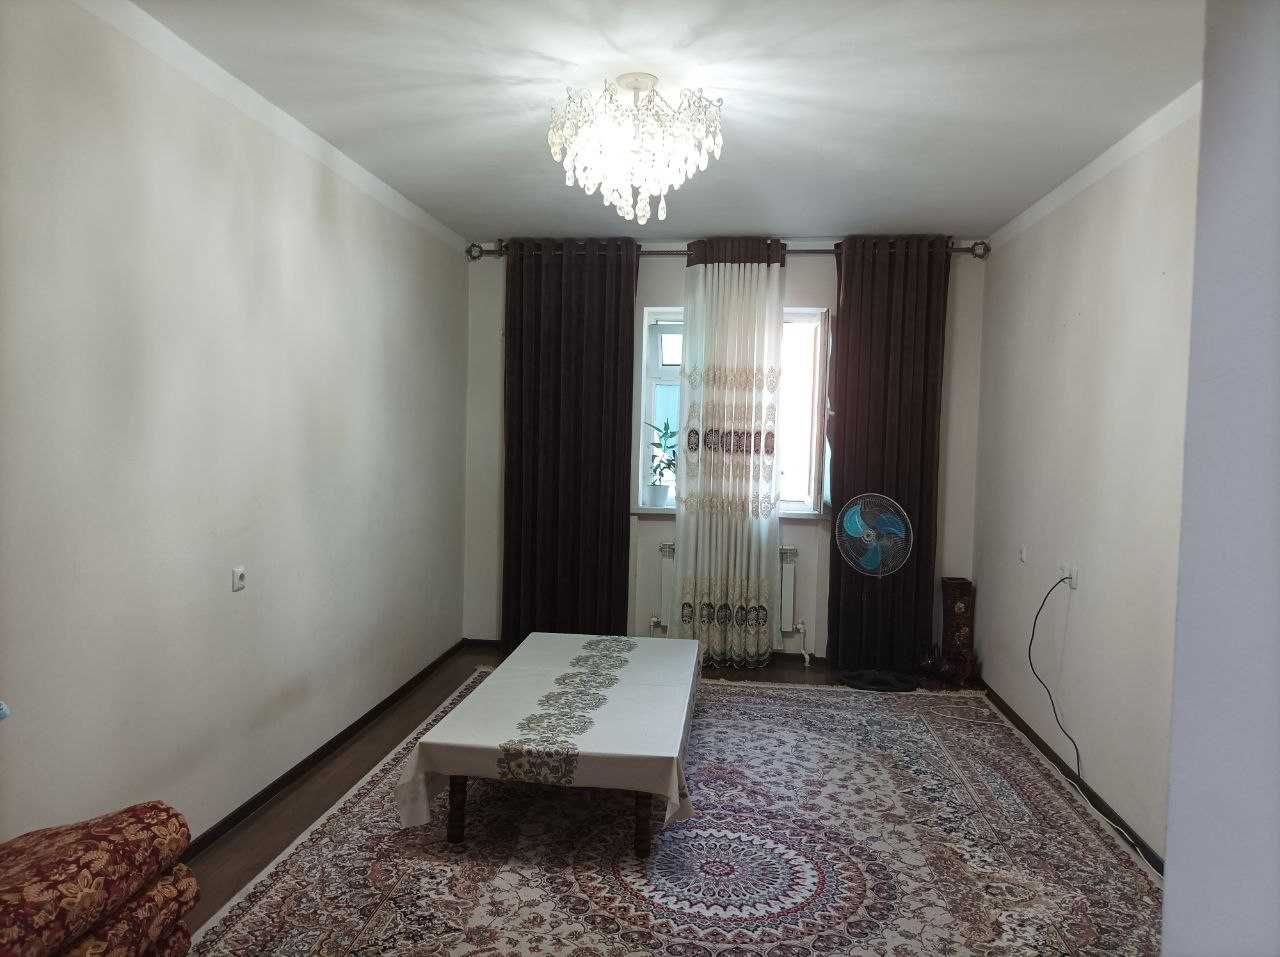 Продается 3-х комнатная квартира в Яшнабаде (RM)